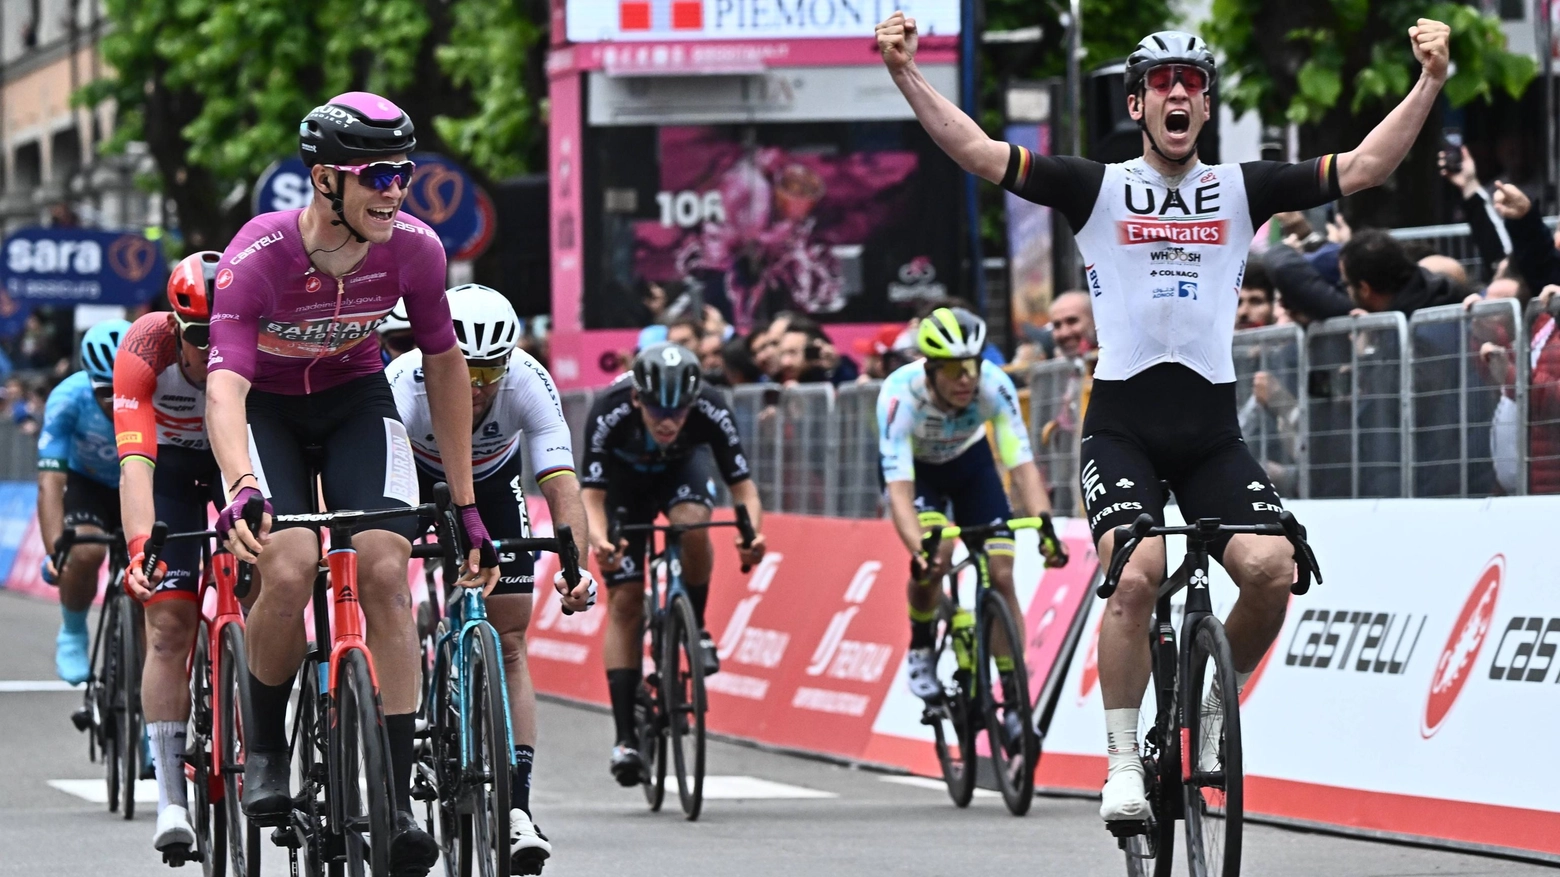 Il Giro d'Italia saluta (per ora) la Versilia. Quindicimila in piazza per la volata finale